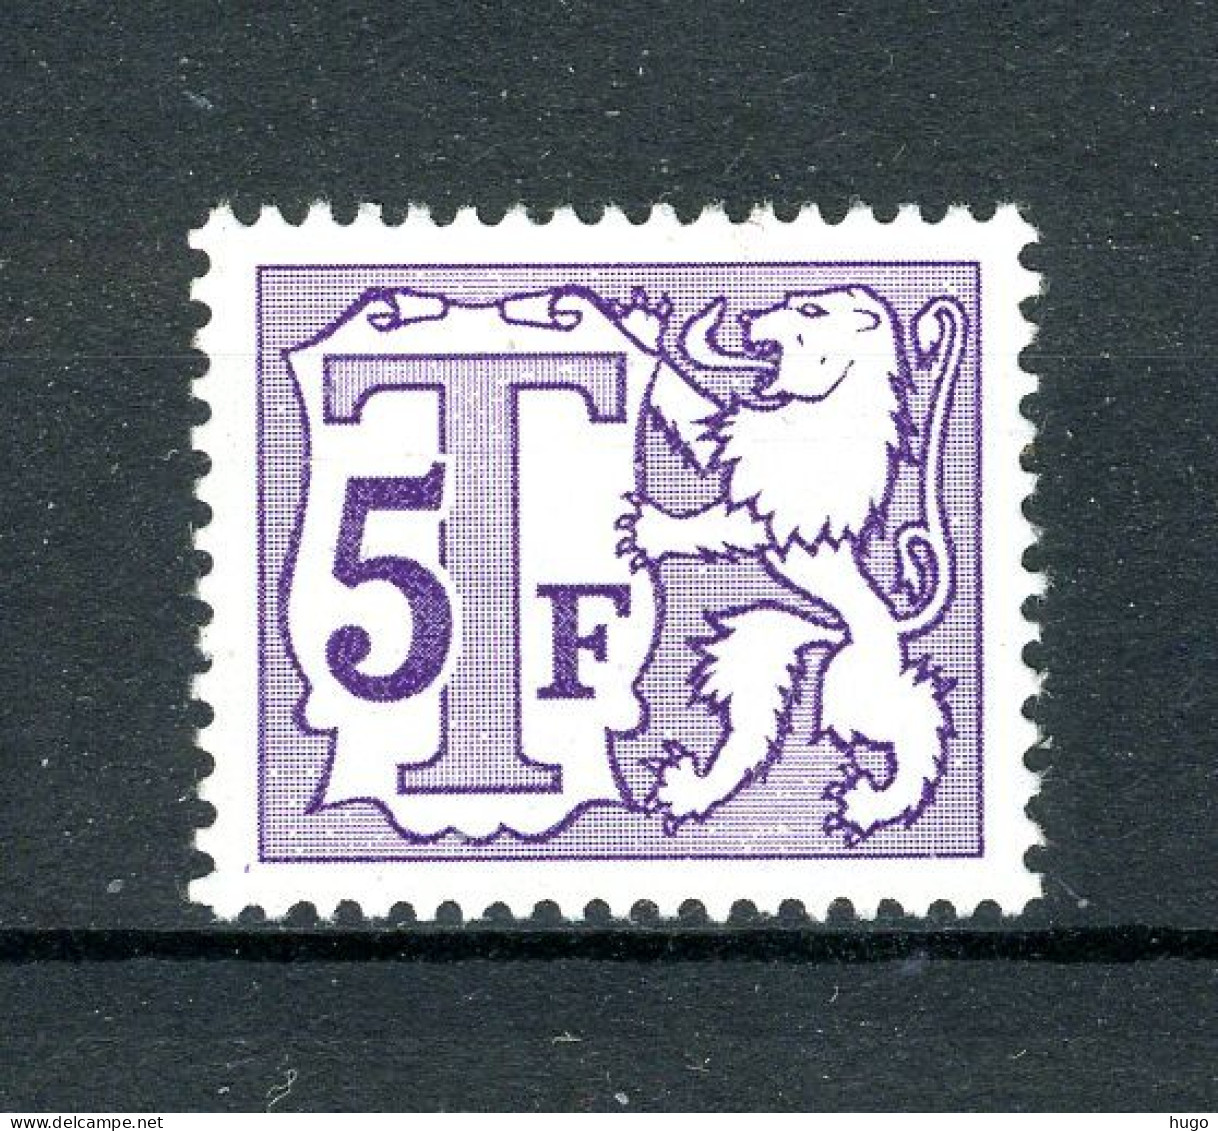 (B) TX69P7 MNH 1966 - Nieuw Type Heraldieke Leeuw - Stamps